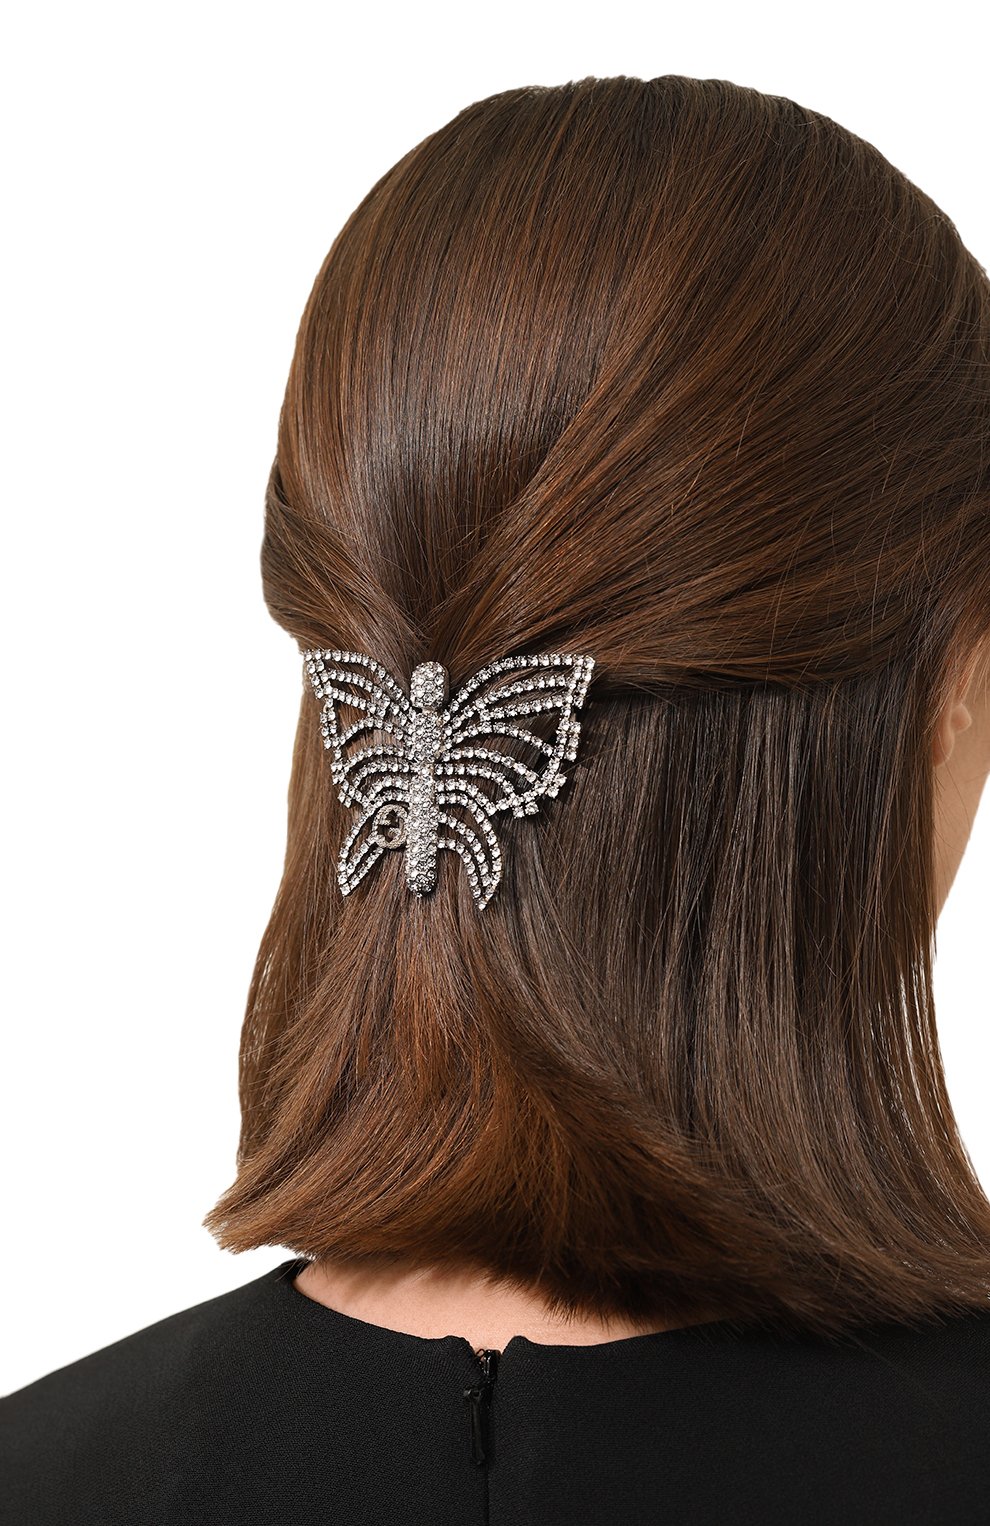 Женская серебряная заколка для волос GUCCI купить в интернет-магазине ЦУМ,арт. 621939 J3F42